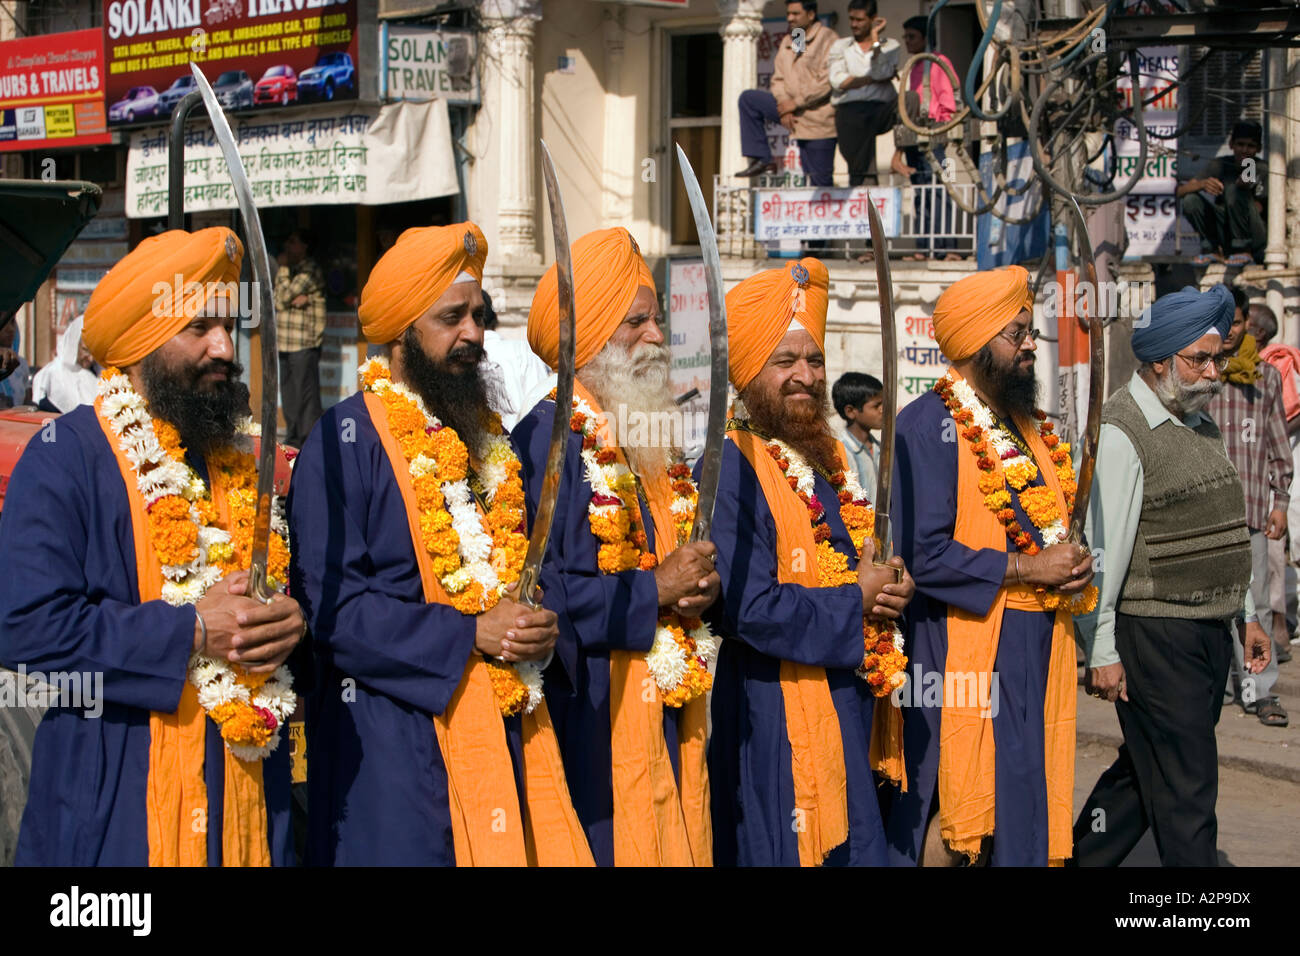 La India Rajasthan Jodhpur la religión Sikh procesión religiosa hombres weilding cimitarras ceremonial Foto de stock